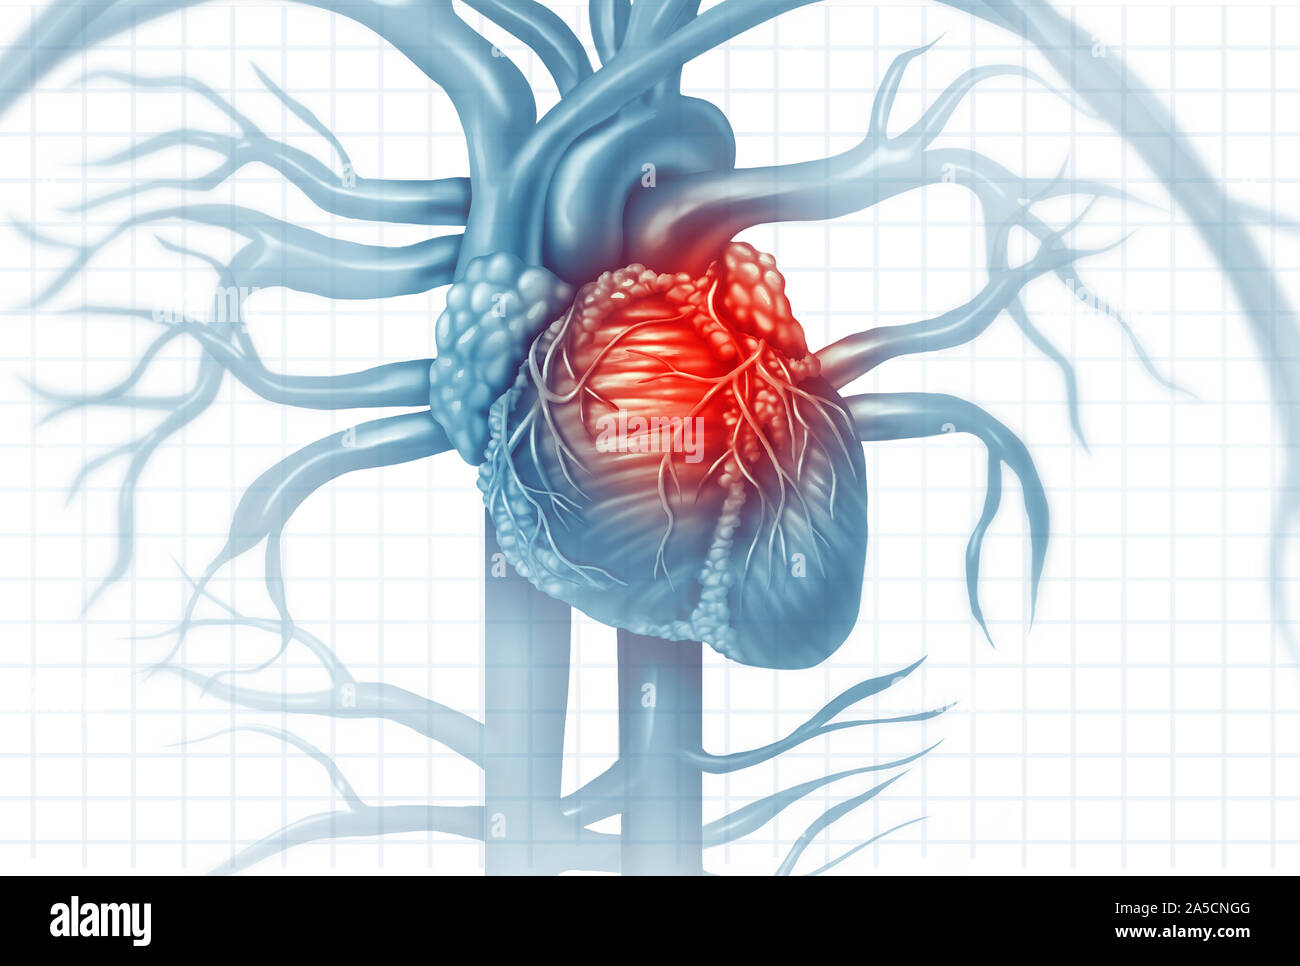 Le malattie cardiovascolari di cuore umano dolore di attacco come una anatomia medica nozione di malattia con una persona che soffre di una malattia cardiaca come un doloroso. Foto Stock